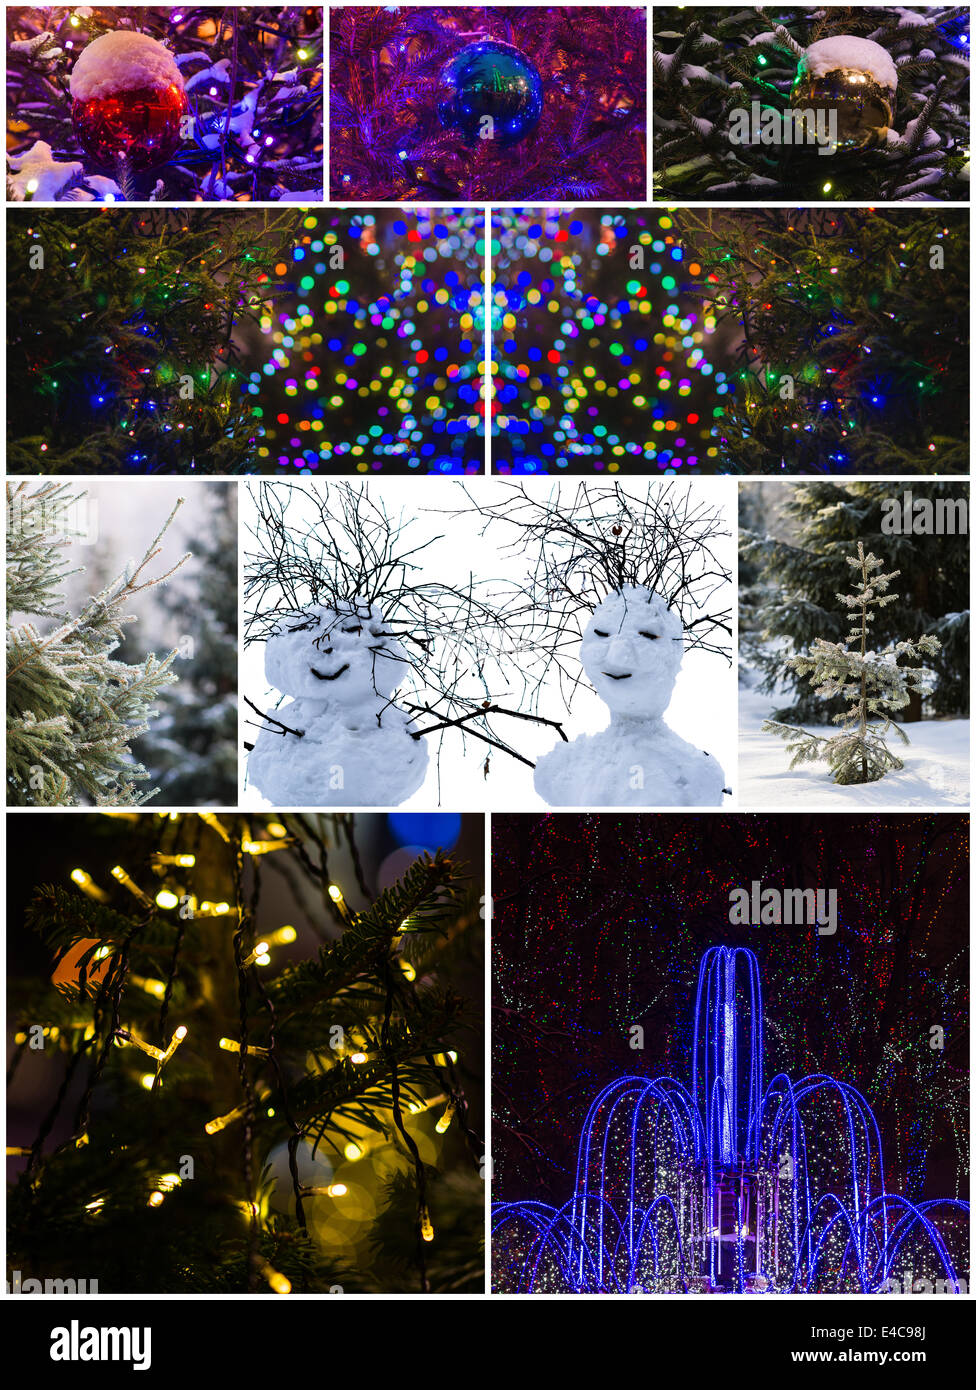 Collage aus einem Schneemänner, natürlichen Fichten, beleuchteten Brunnen, Deko-Kugeln mit Schnee bedeckt. Frohe Weihnachten! Stockfoto